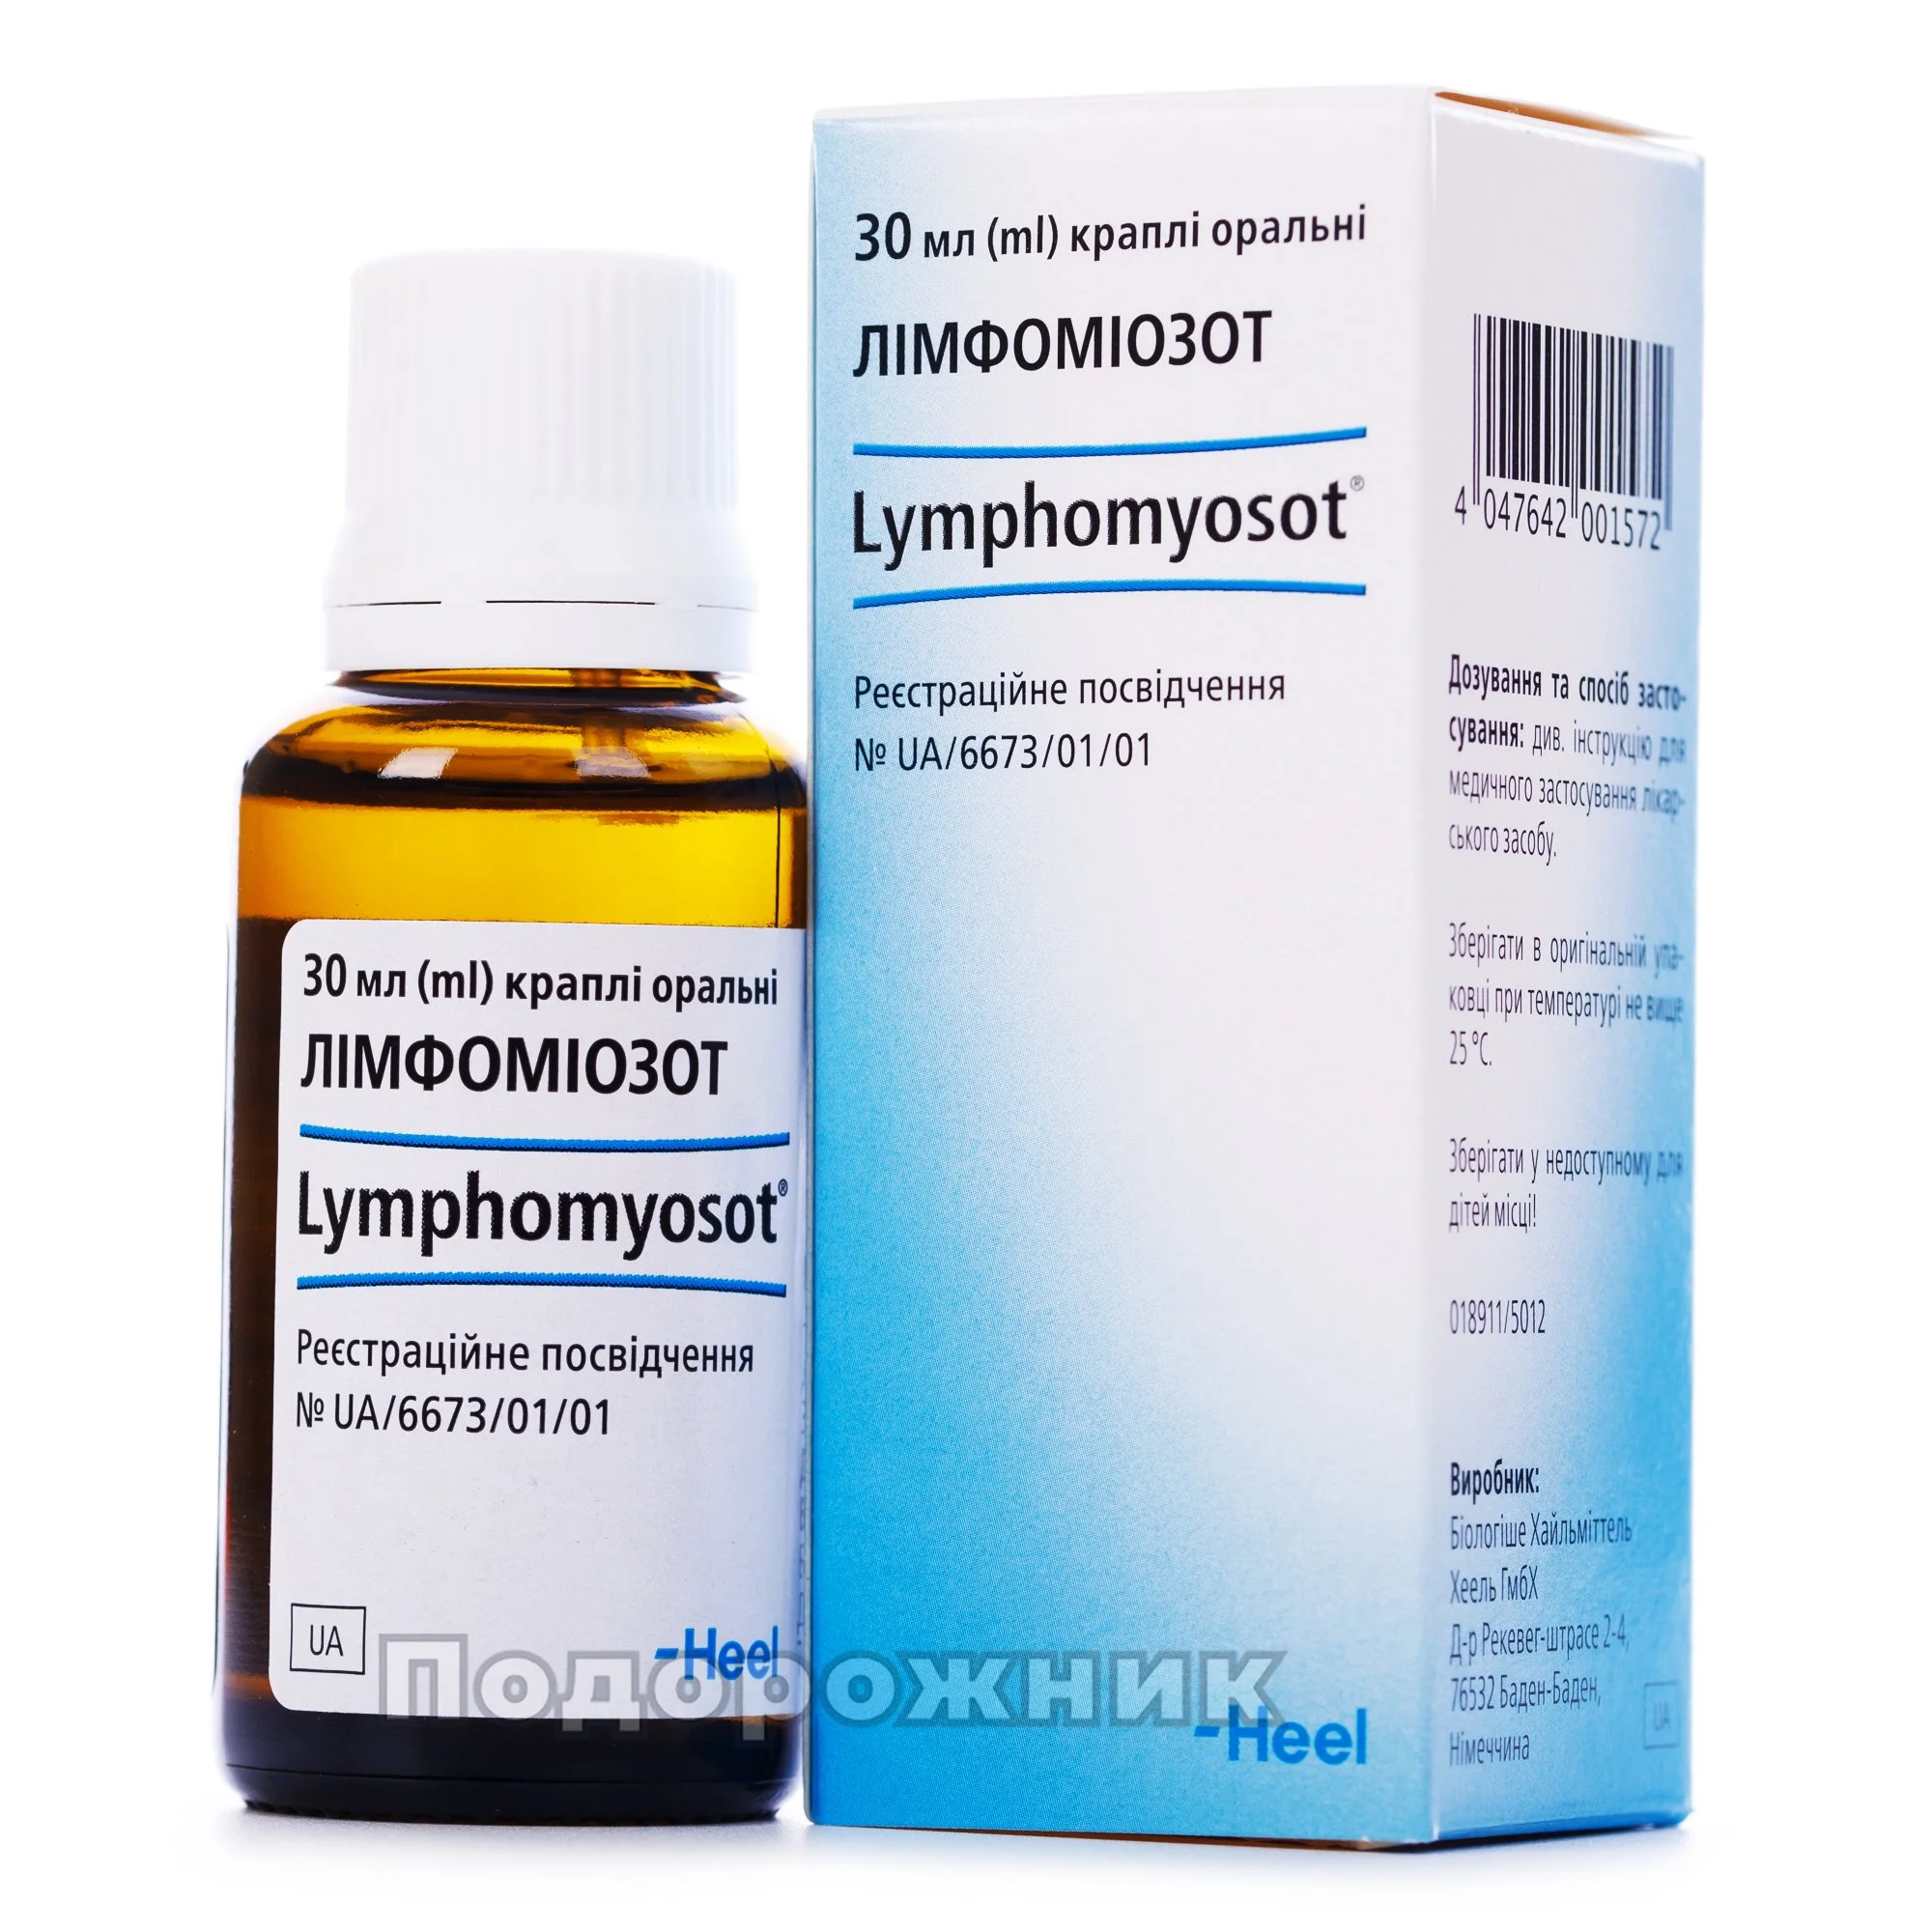 Капли лимфомиозот отзывы взрослых